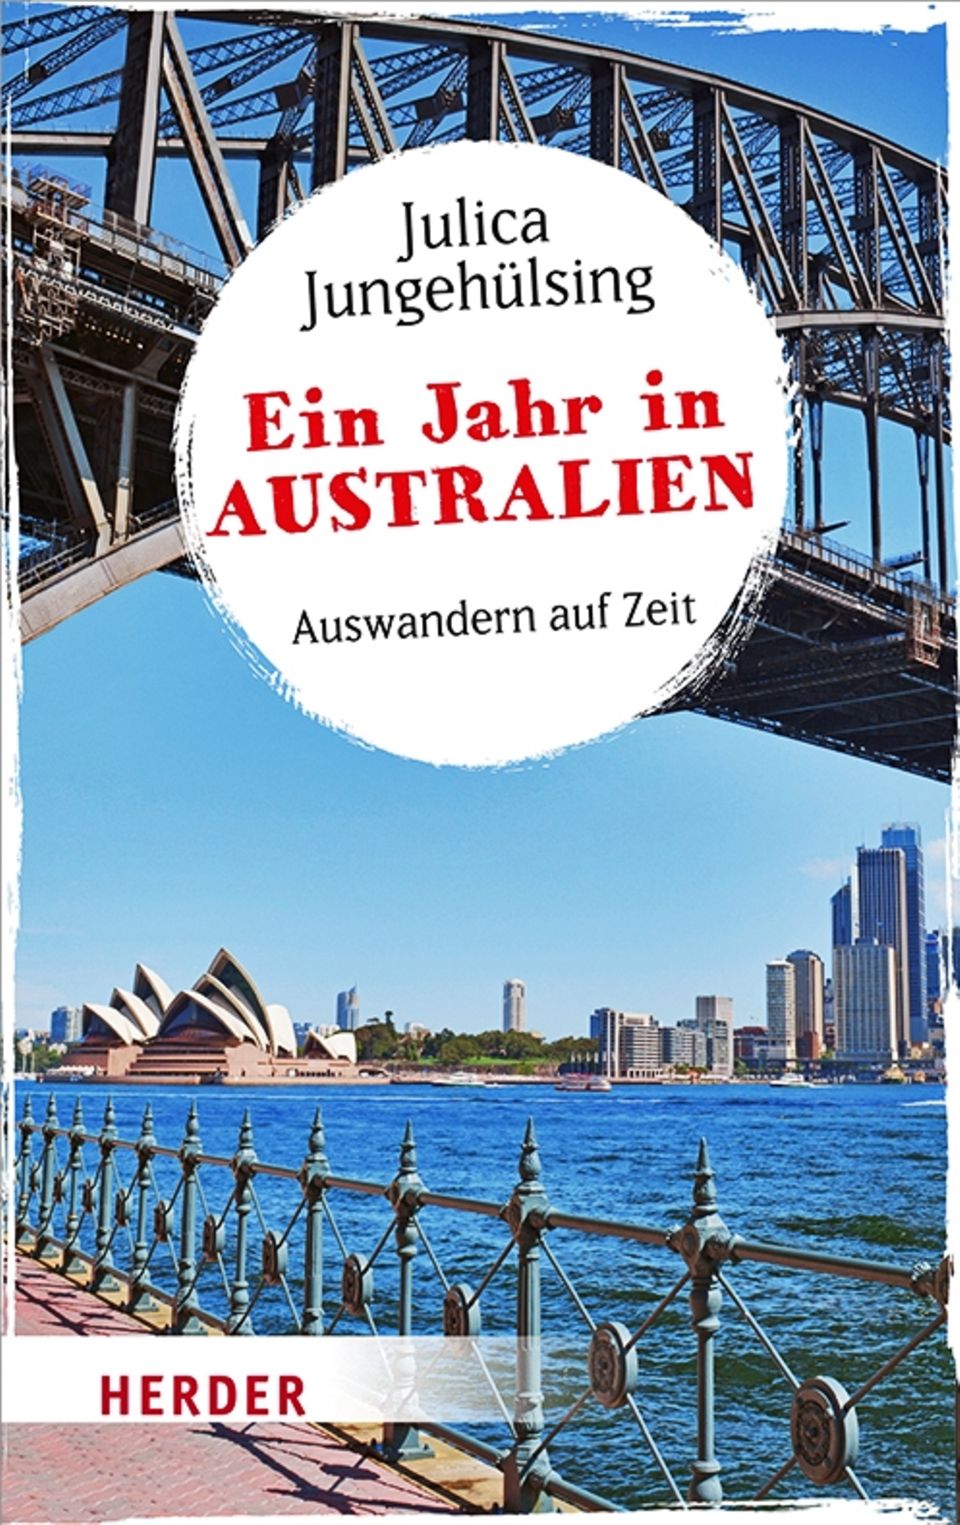 Australien: E-Book Reiseführer